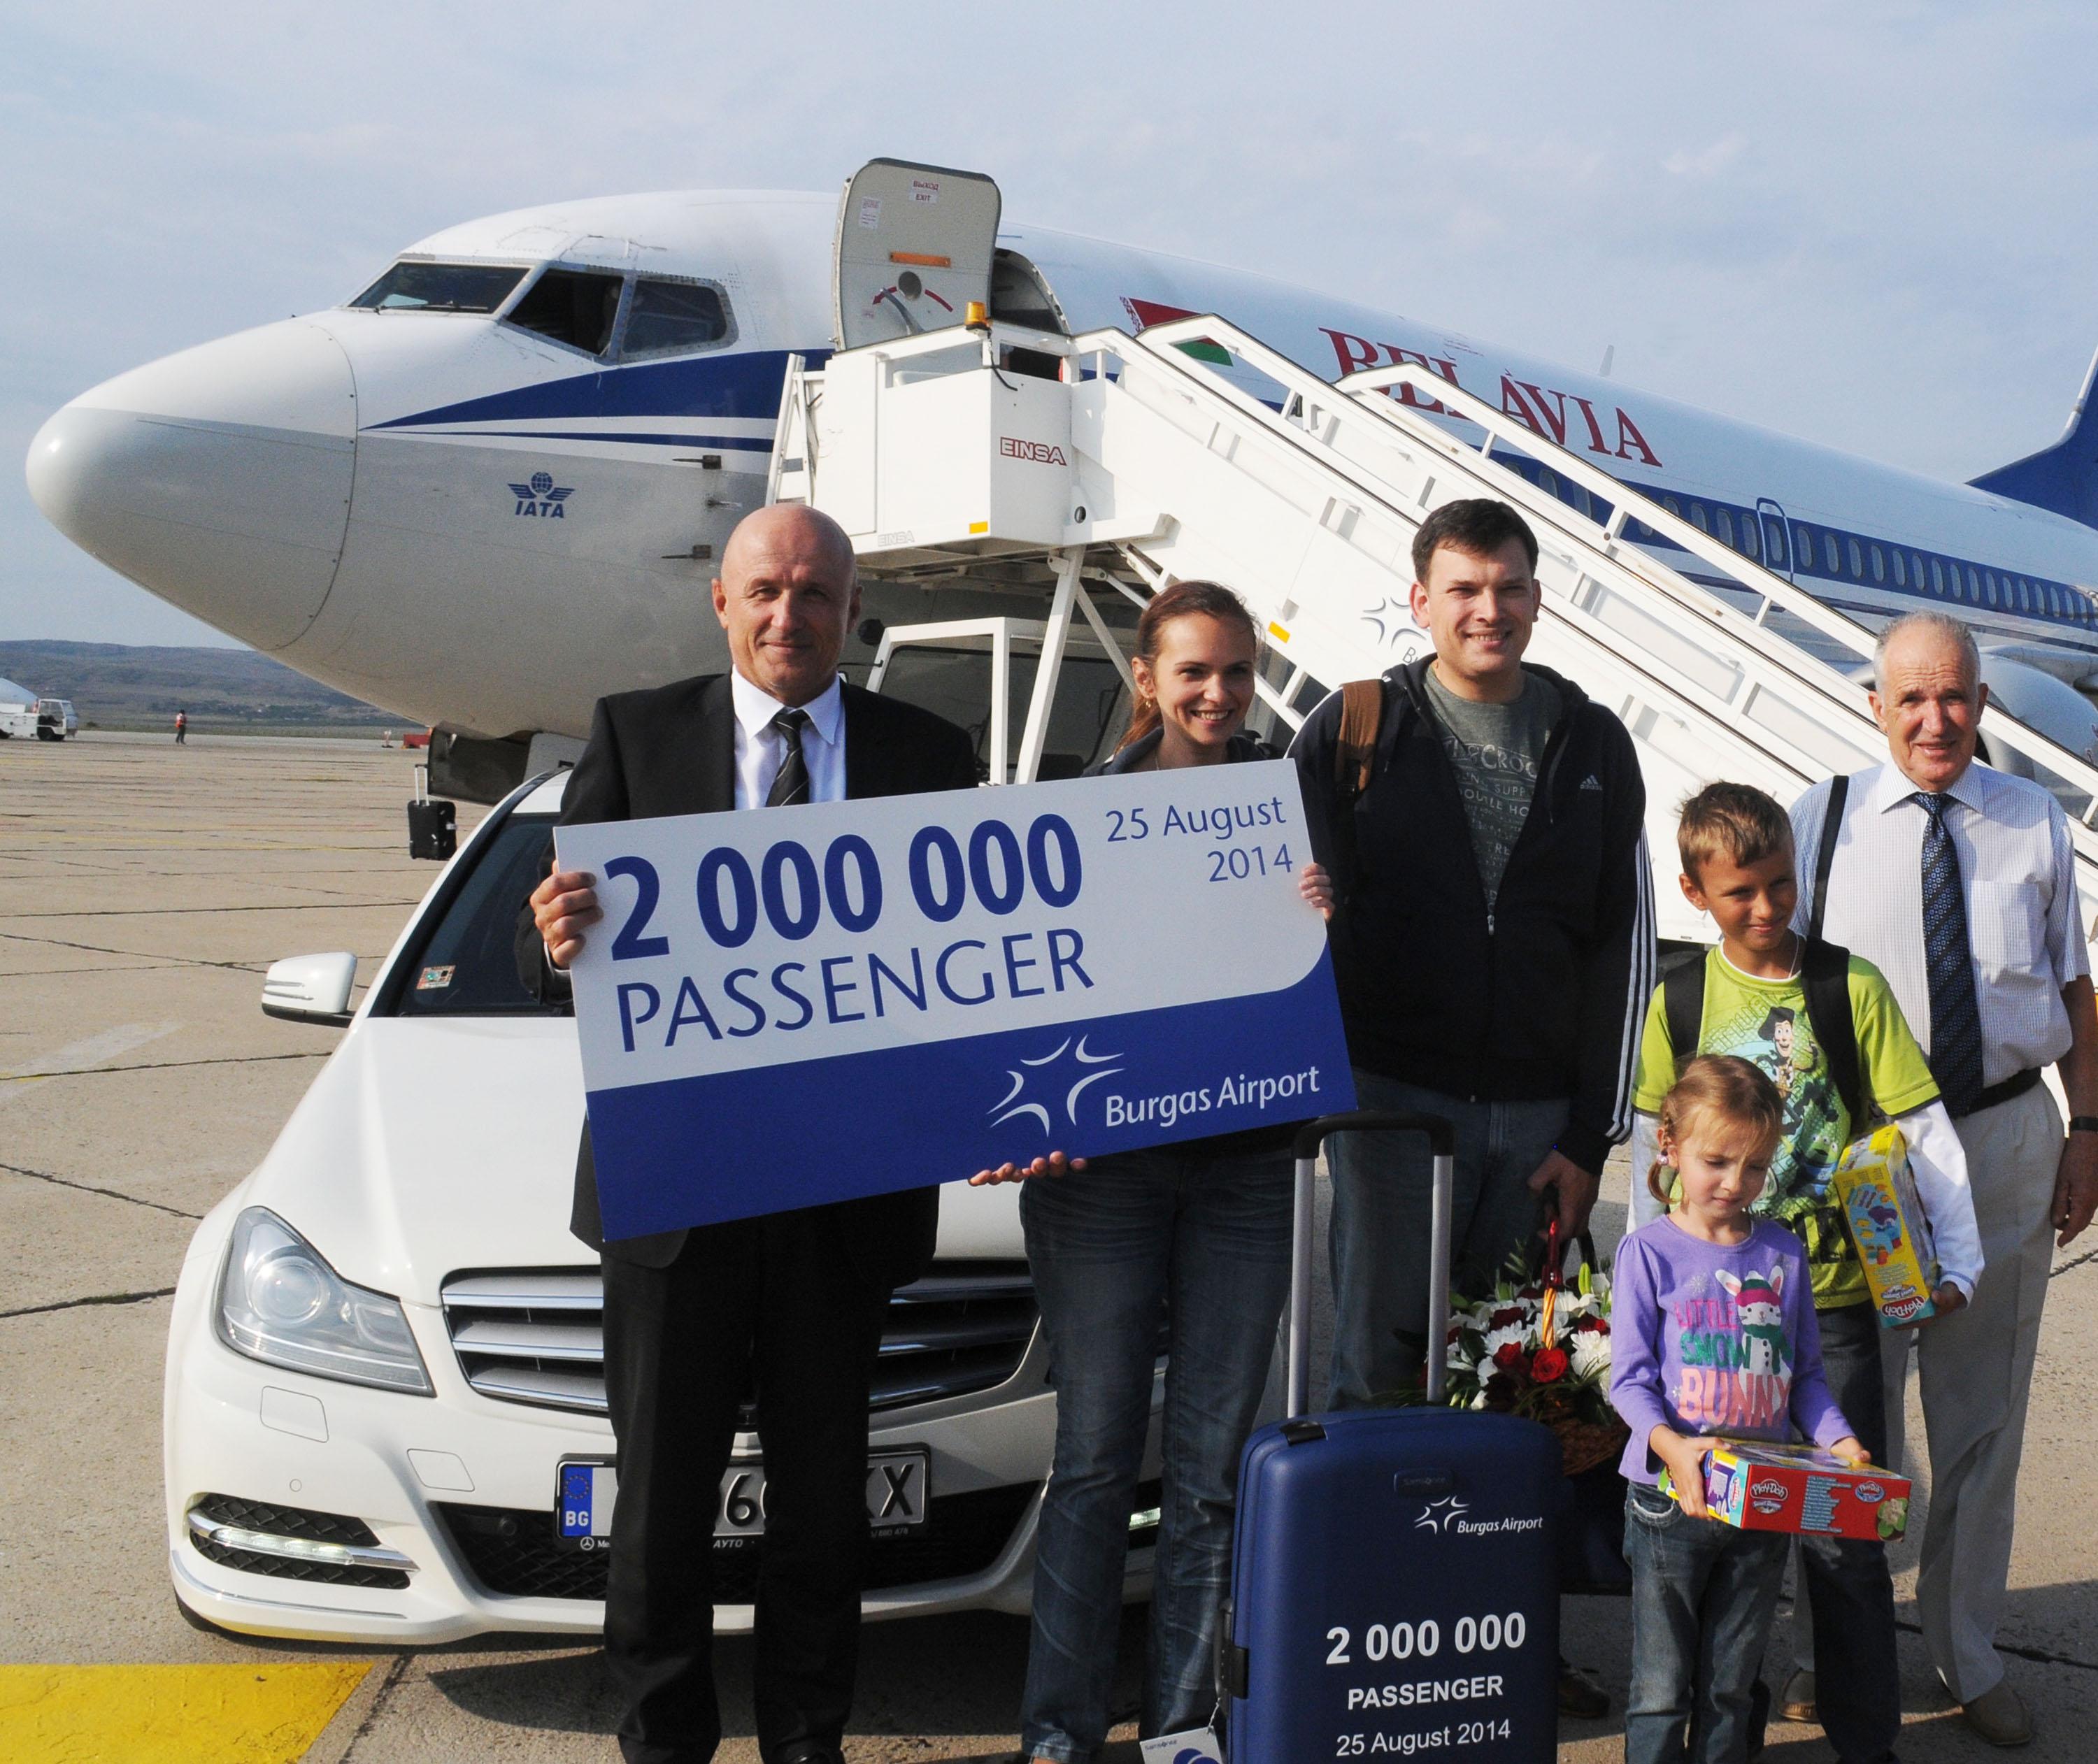 Двумилионният пътник на Летище Бургас за 2014 г. пристигна в края на август (сн. архив)